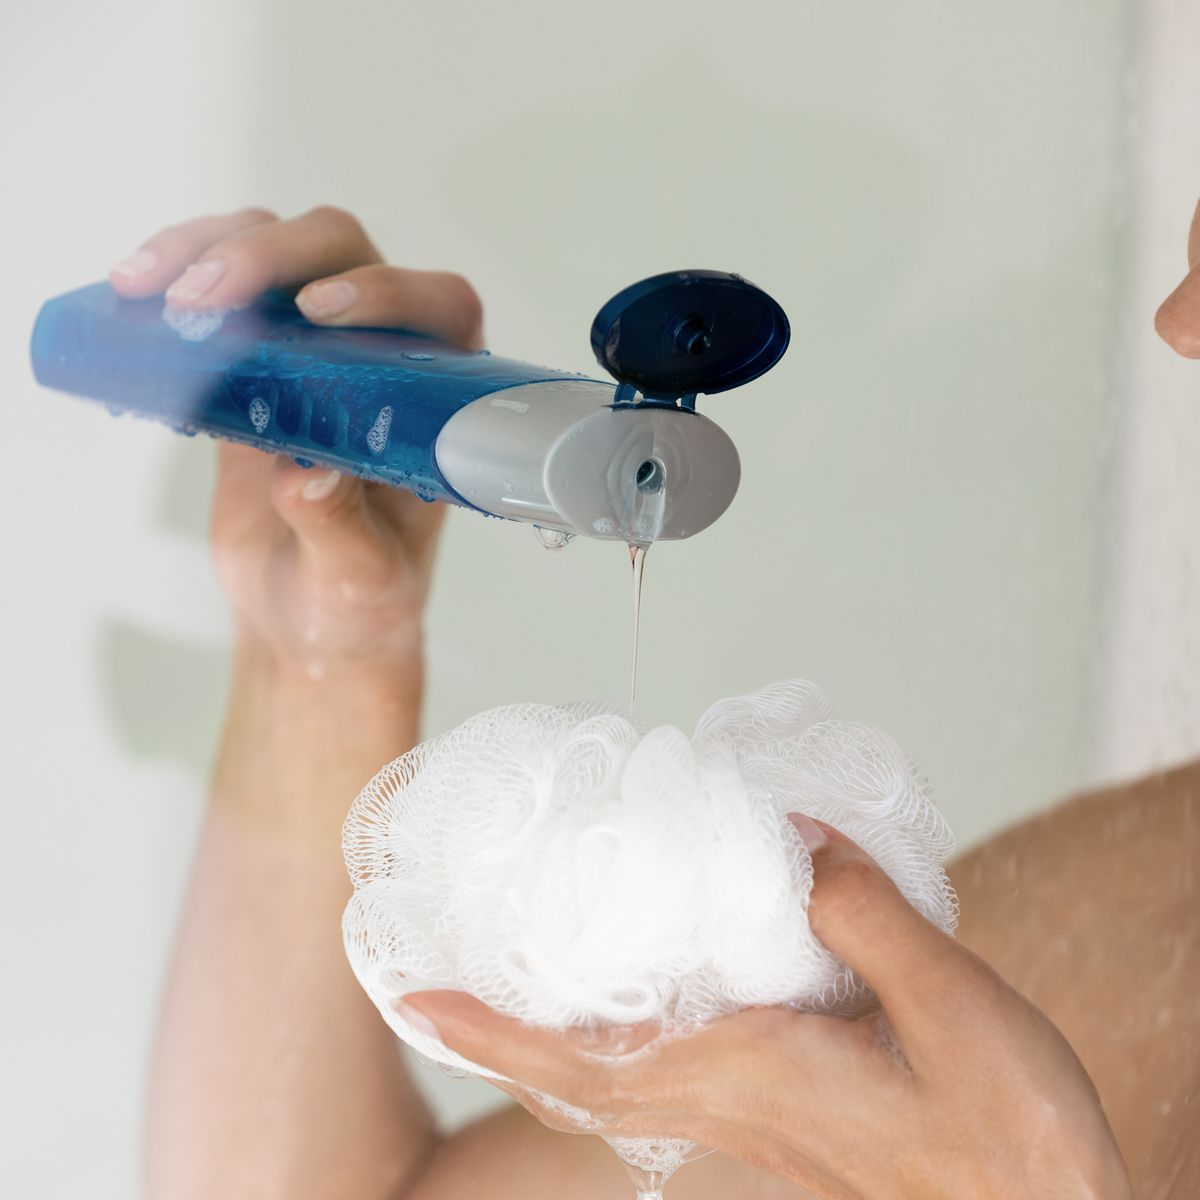 Por qué deberías dejar de usar esponjas de baño